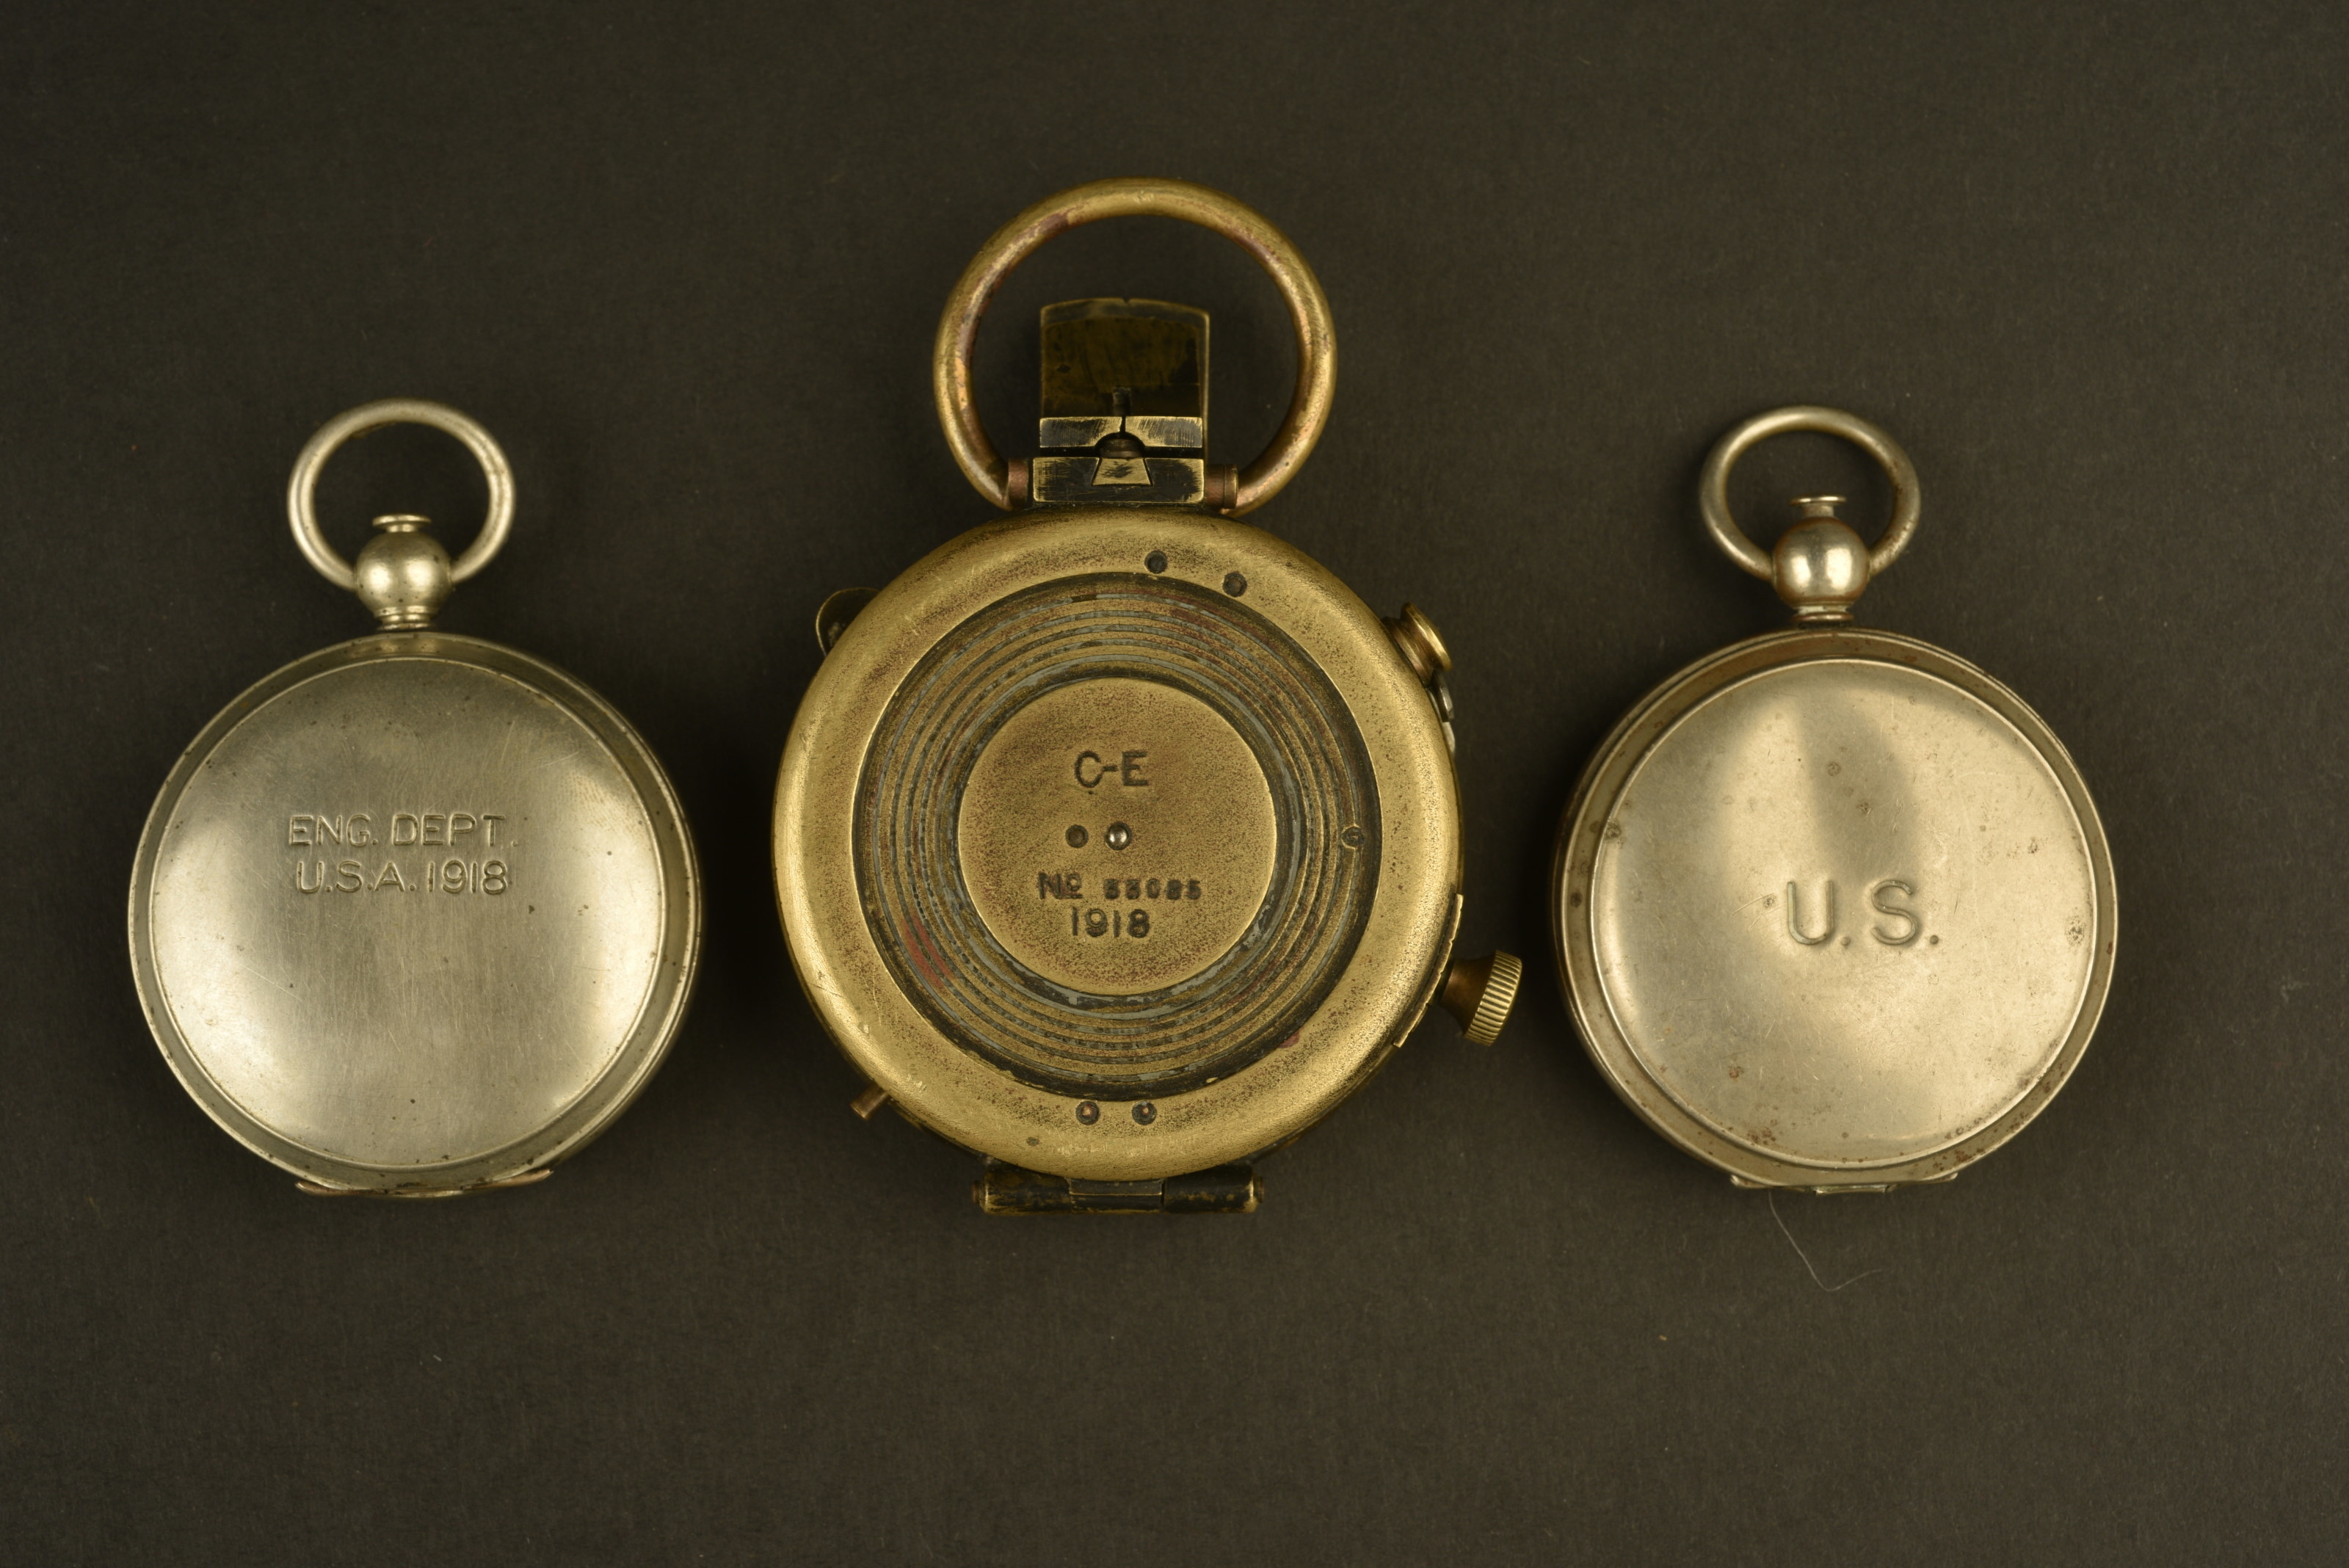 Boussole de poche USAAF, Keuffel & Esser